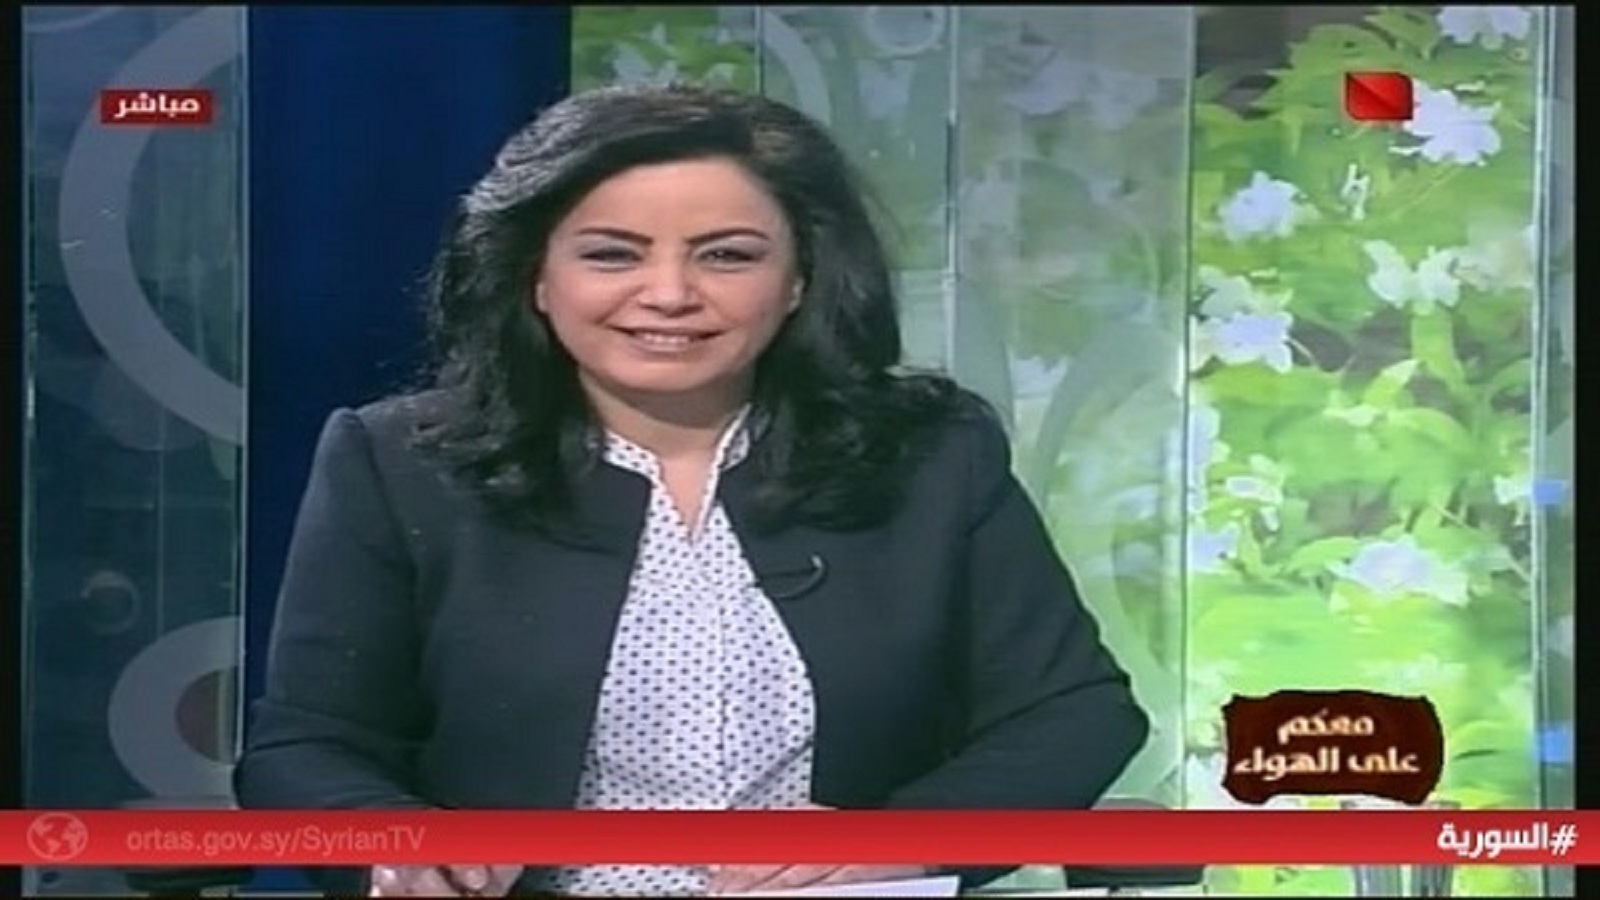 النظام يعتقل واحدة من أقدم مذيعات التلفزيون السوري